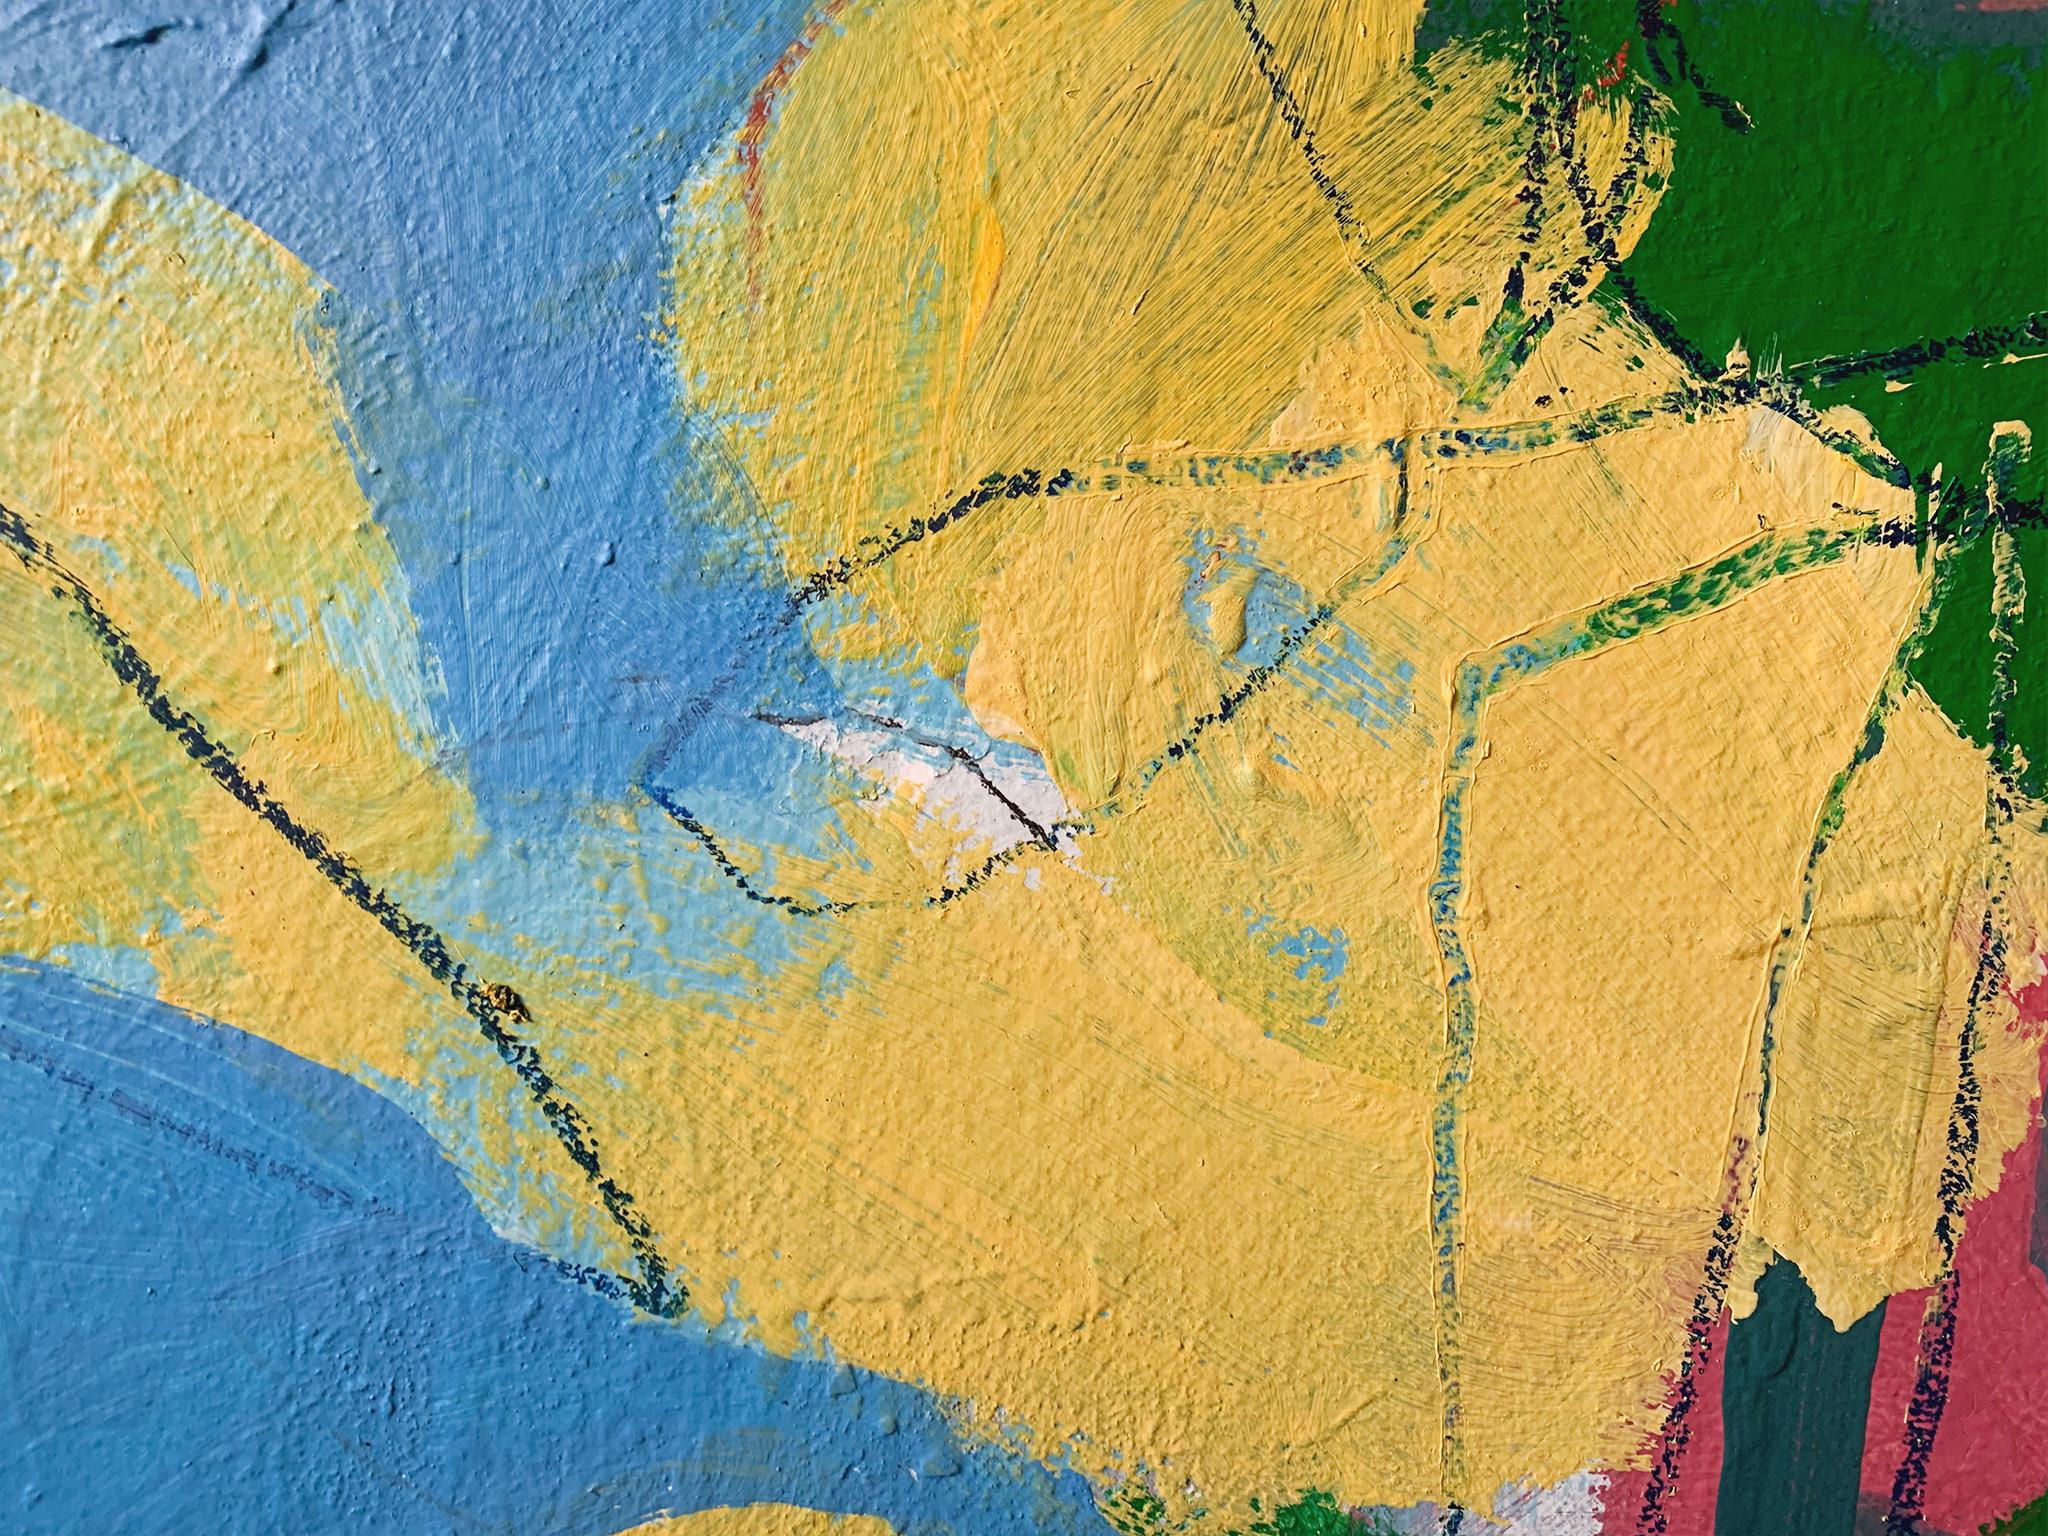 Canvas M. P. Landis Landscape Painting 'Yellow Flowers & Blue Sky' For Sale